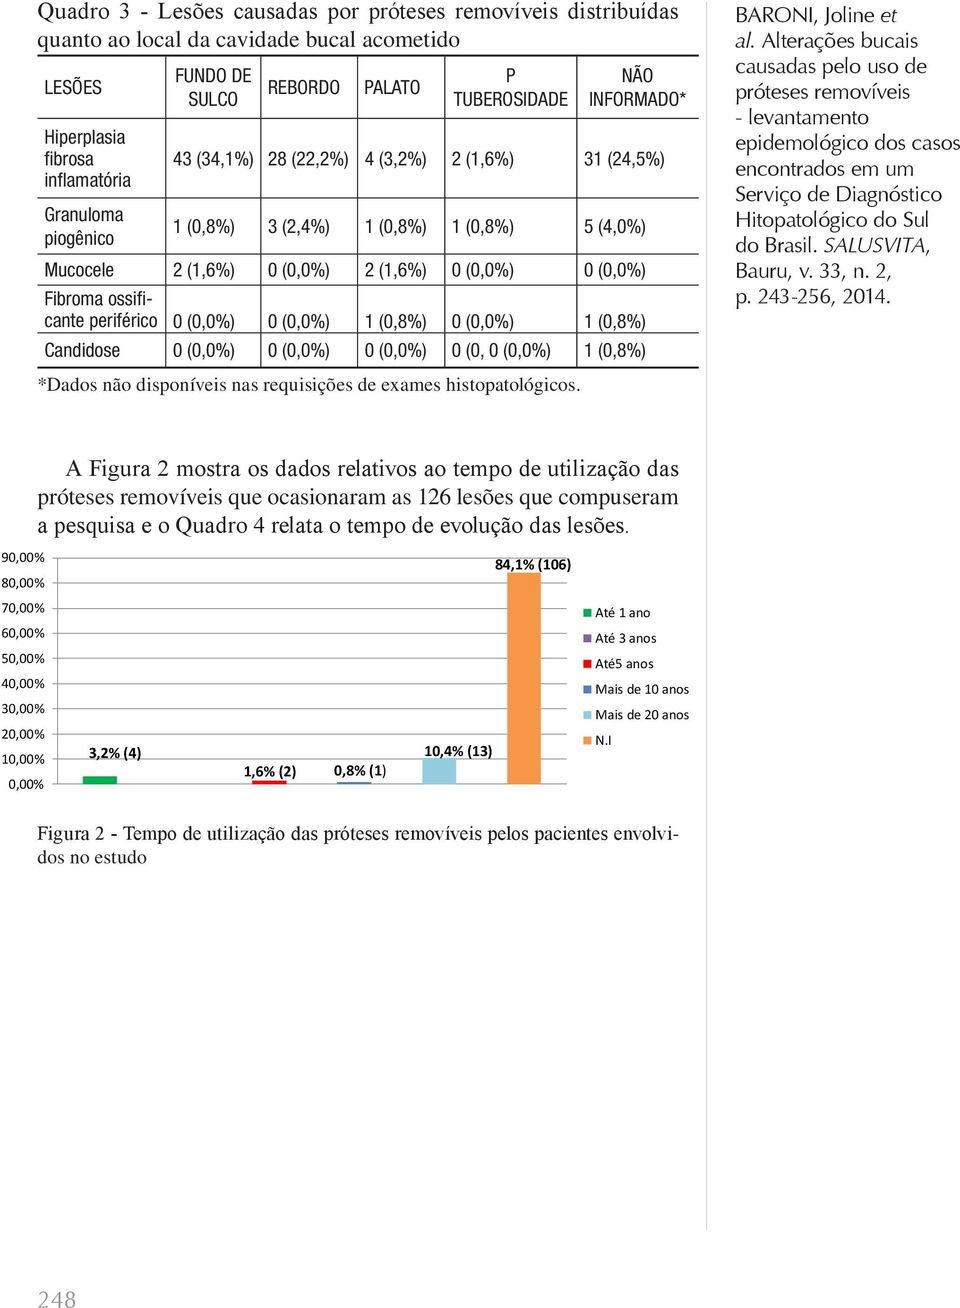 0 (0,0%) 1 (0,8%) 0 (0,0%) 1 (0,8%) Candidose 0 (0,0%) 0 (0,0%) 0 (0,0%) 0 (0, 0 (0,0%) 1 (0,8%) BARONI, Joline et *Dados não disponíveis nas requisições de exames histopatológicos.